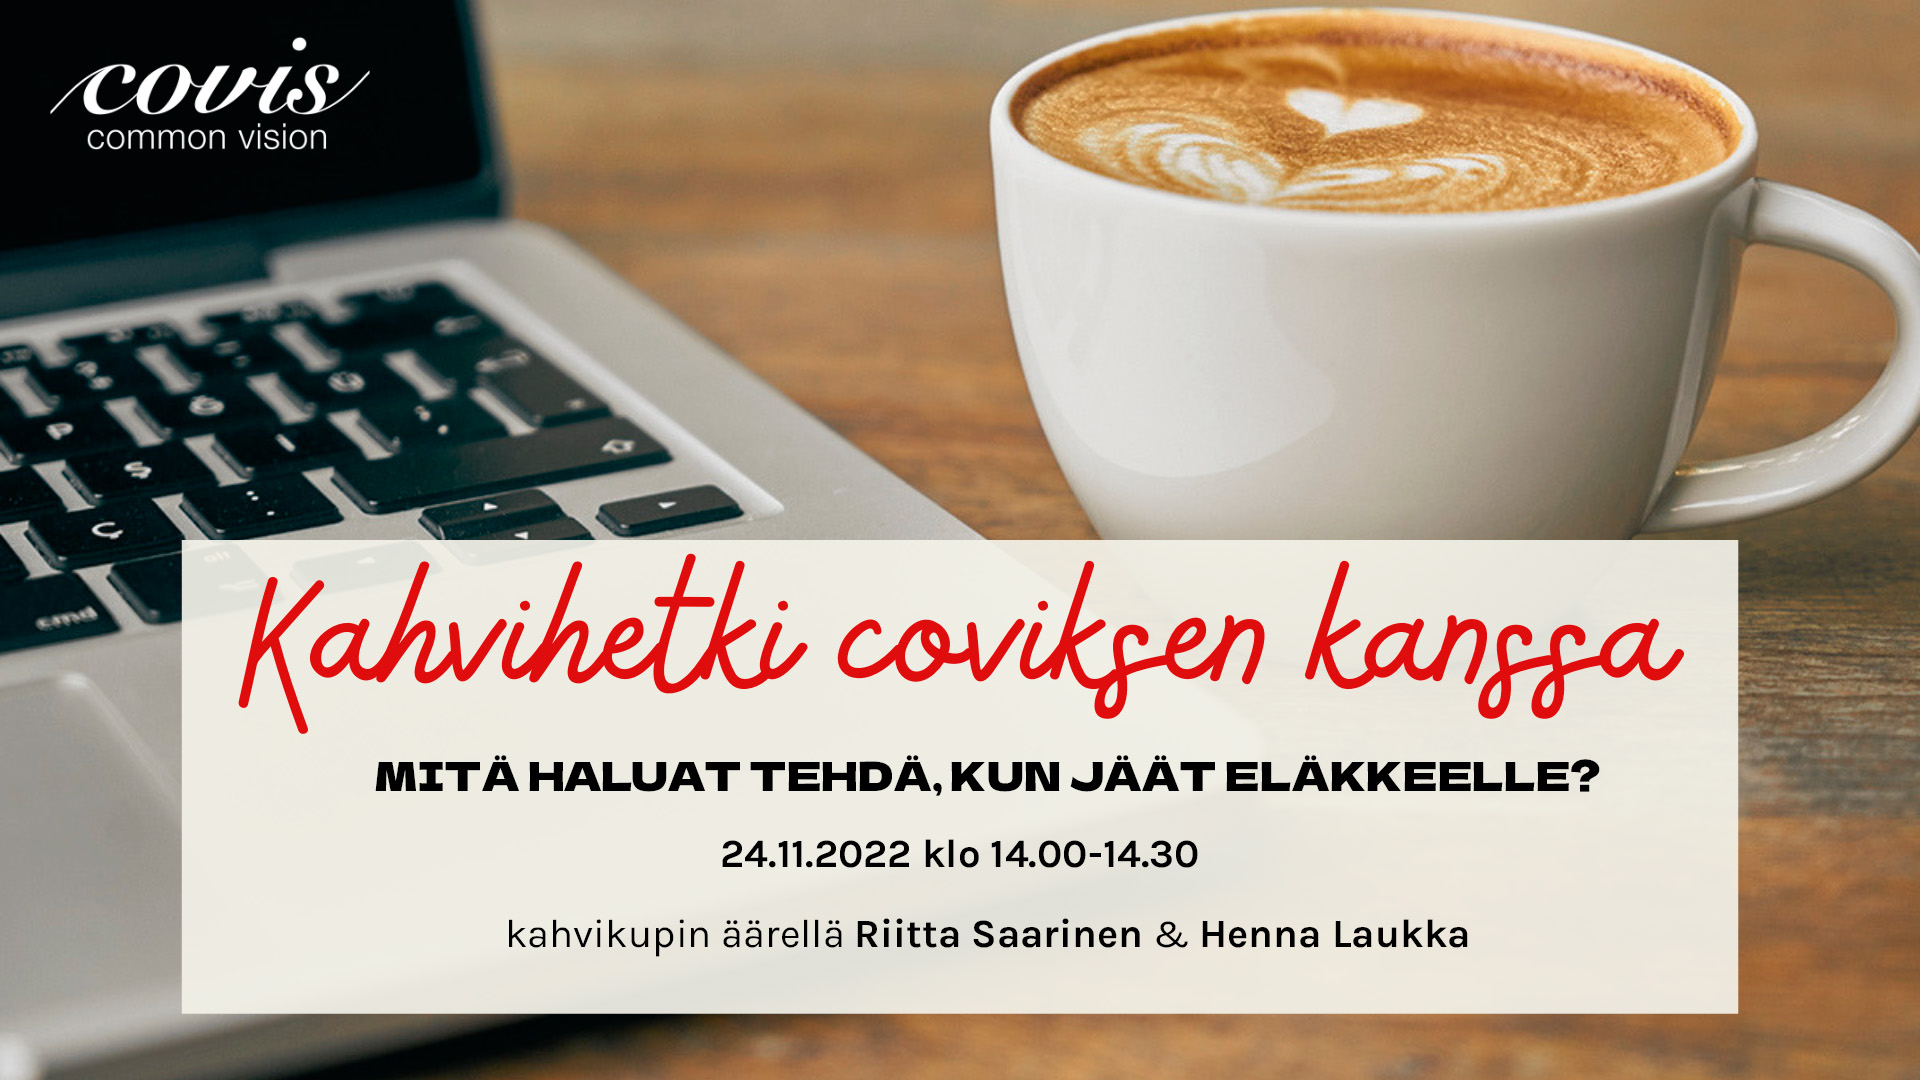 Marraskuun 2022 kahvihetkessä coviksen kanssa puhutaan hyvästä eläkesiirtymästä. Kahvittelemassa Riitta Saarinen ja Henna Laukka. Tervetuloa kuulolle ilmaiseen verkkotilaisuuteen torstaina 24.11.2022 klo 14.